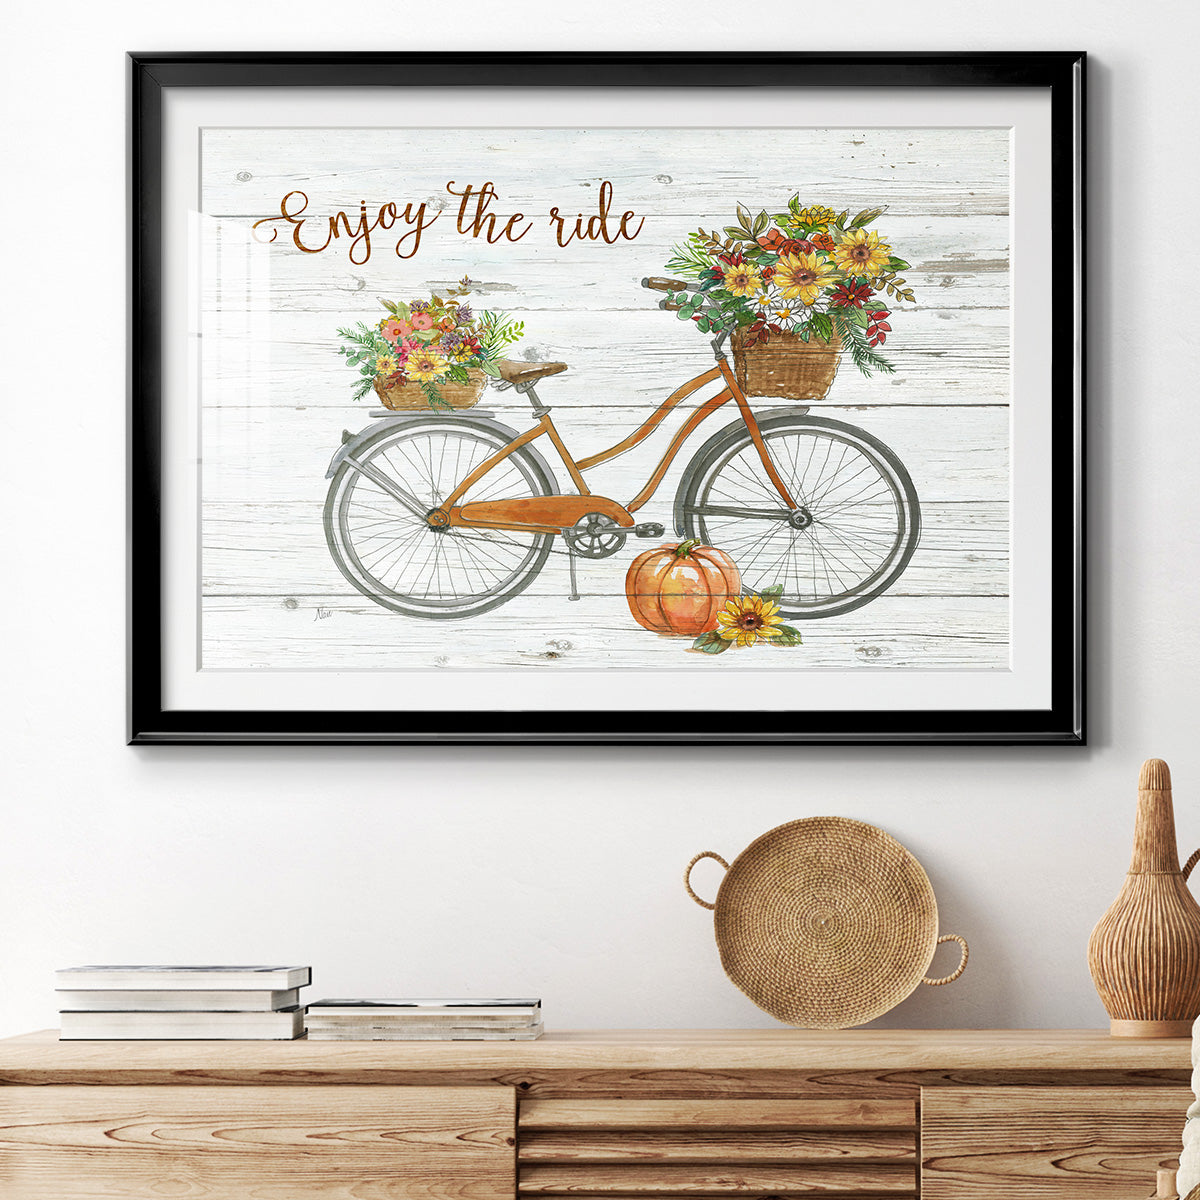 Harvest Bike Premium Framed Print - Ready to Hang